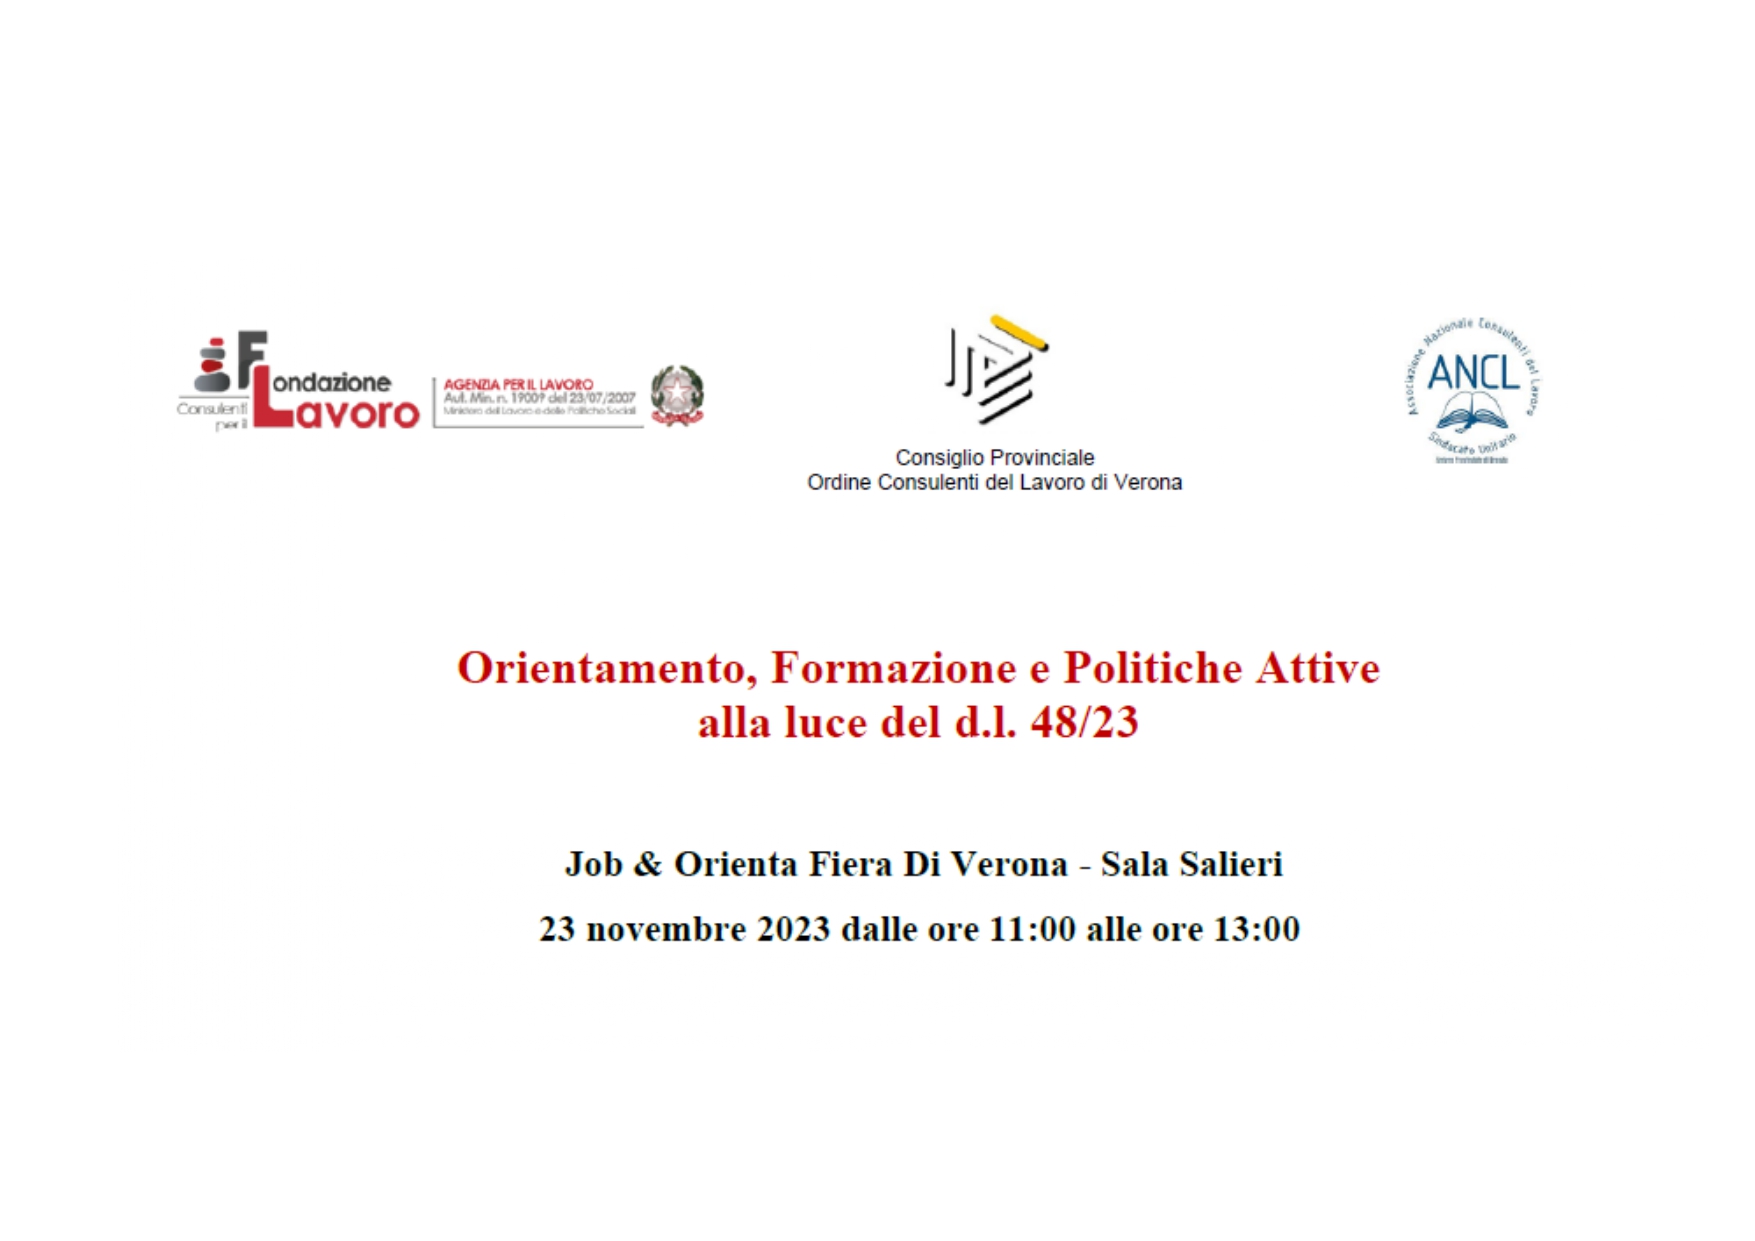 Convegno: "Orientamento, Formazione e Politiche Attive alla luce del d.l. 48/23" Verona 23 novembre 2023